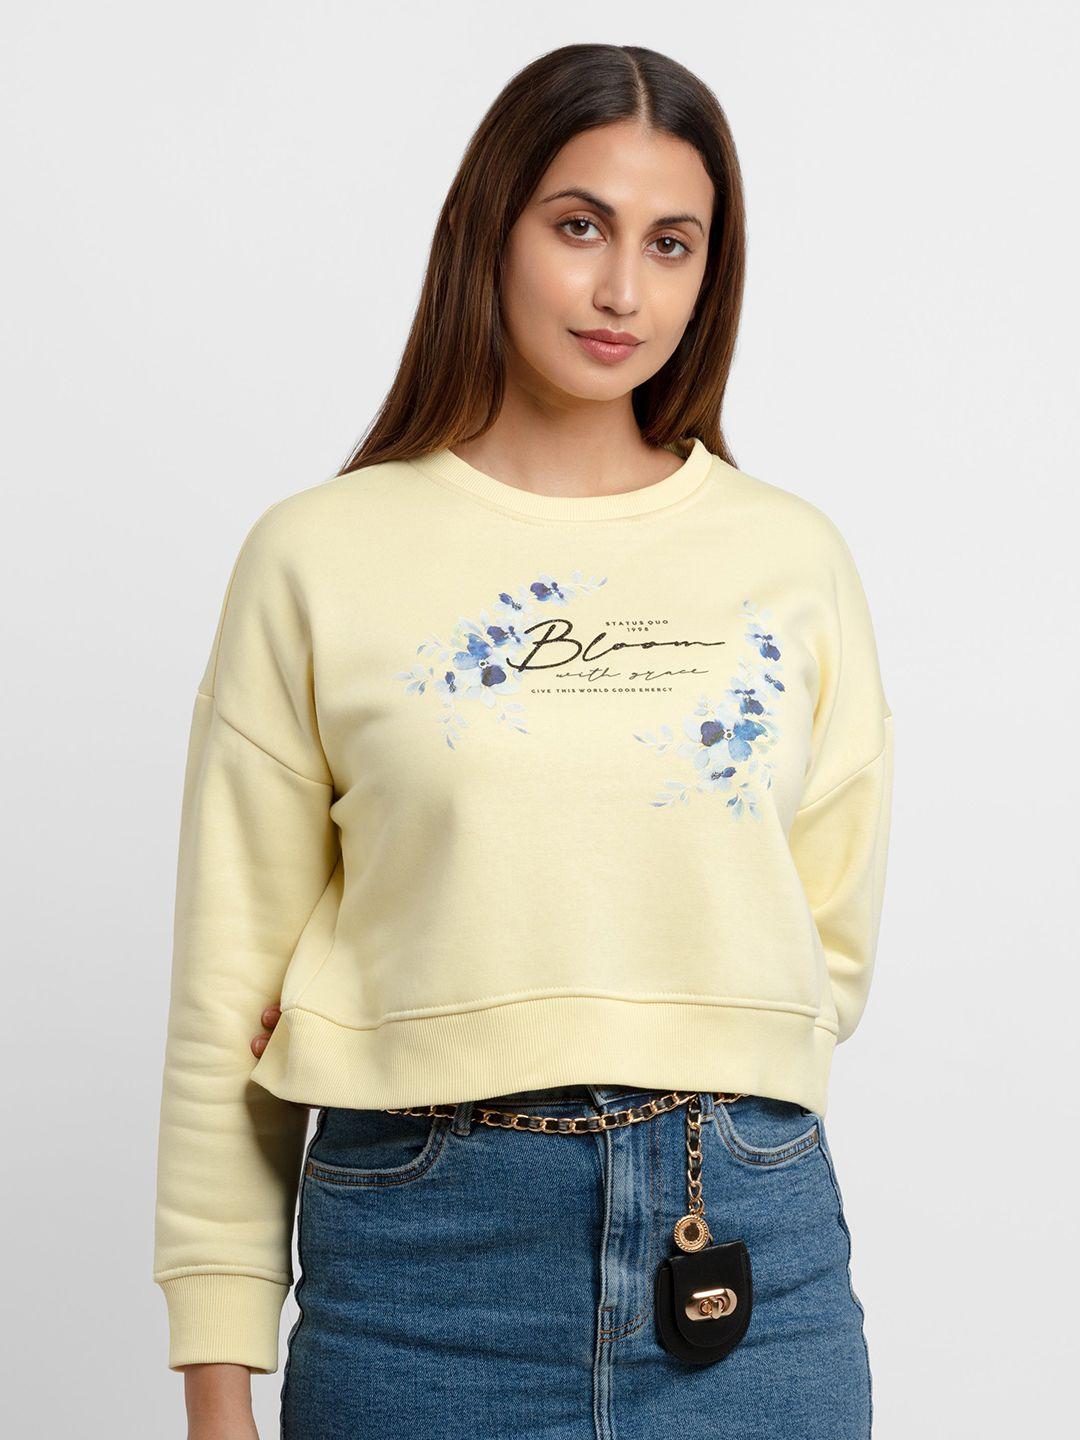 status quo women yellow printed sweatshirt